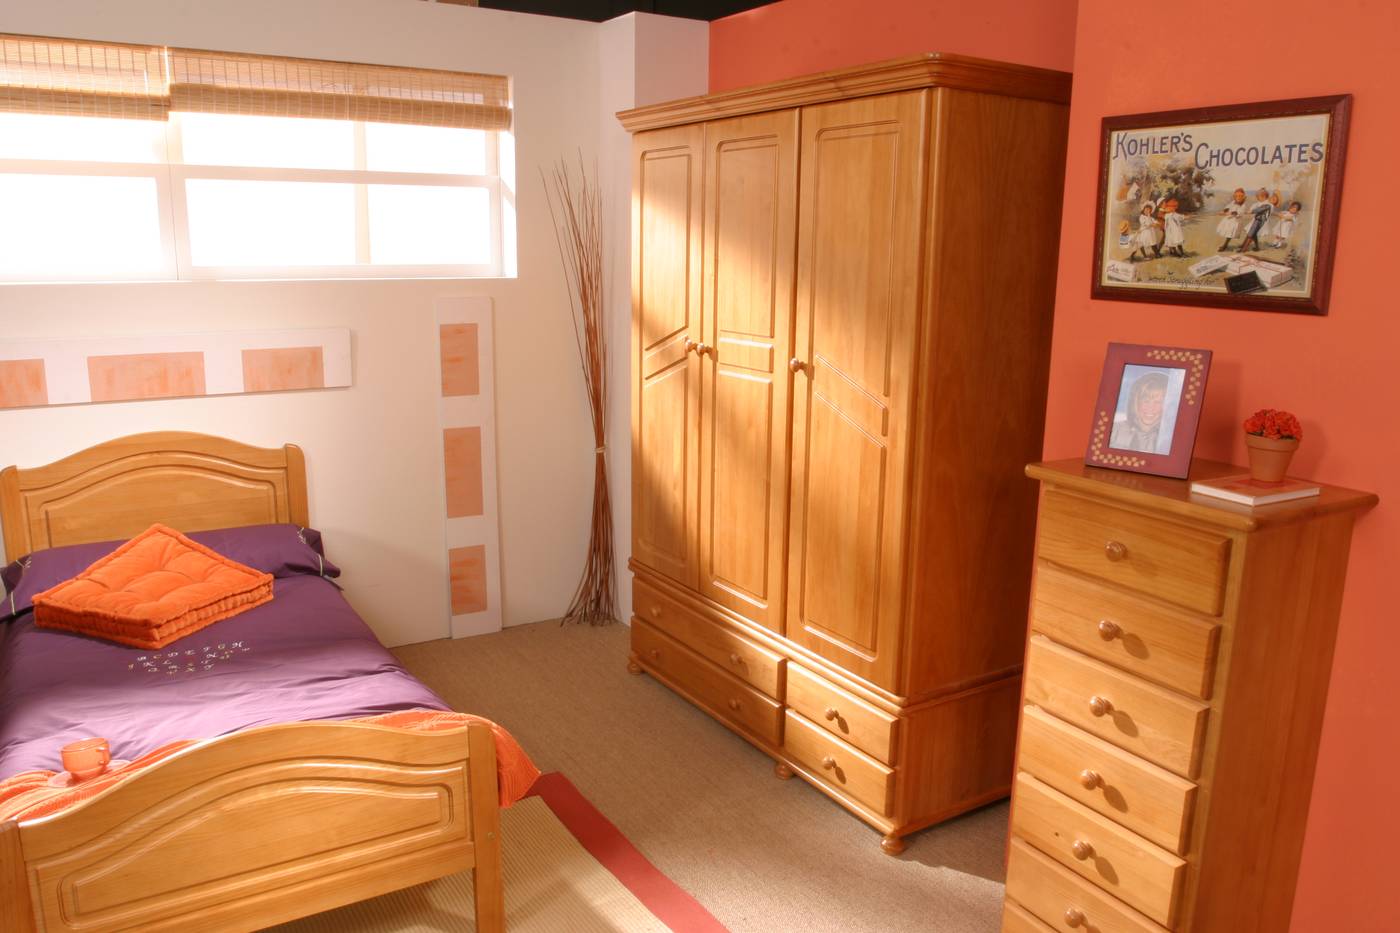 Xinfonier Pino 50 cm. - Sifonier 7 cajones para dormitorio juvenil o matrimonio, de madera de pino maciza, pintado en una amplia gama de colores